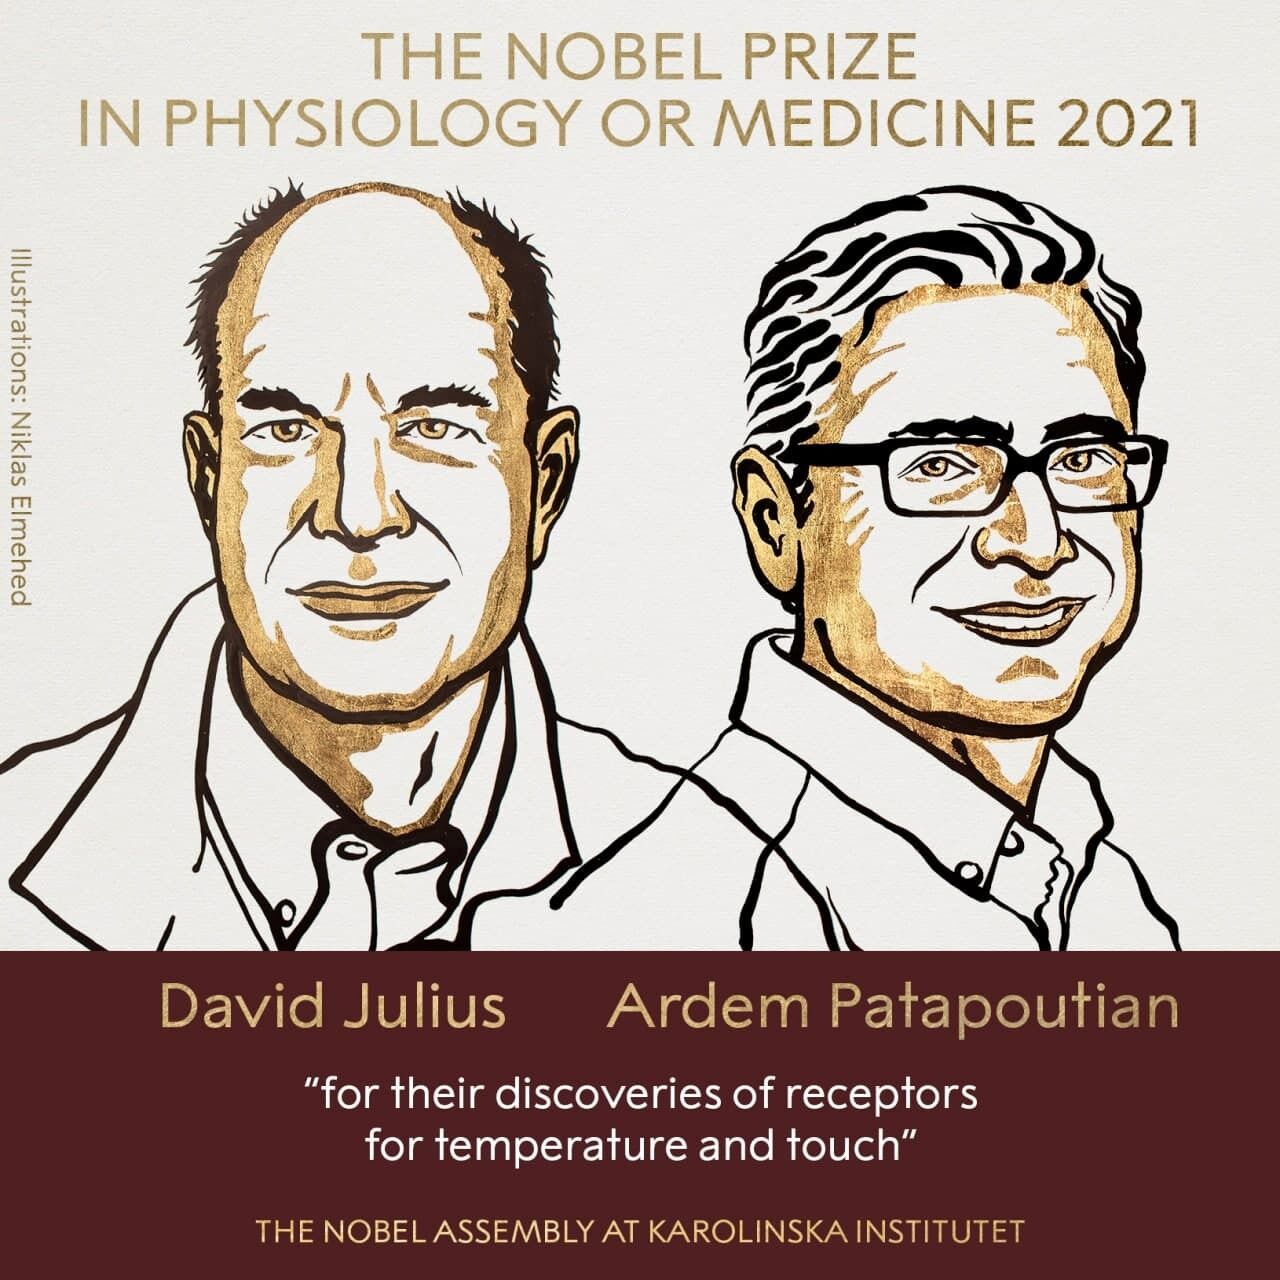 Нобелевские лауреаты в области физиологии и медицины 2021 года